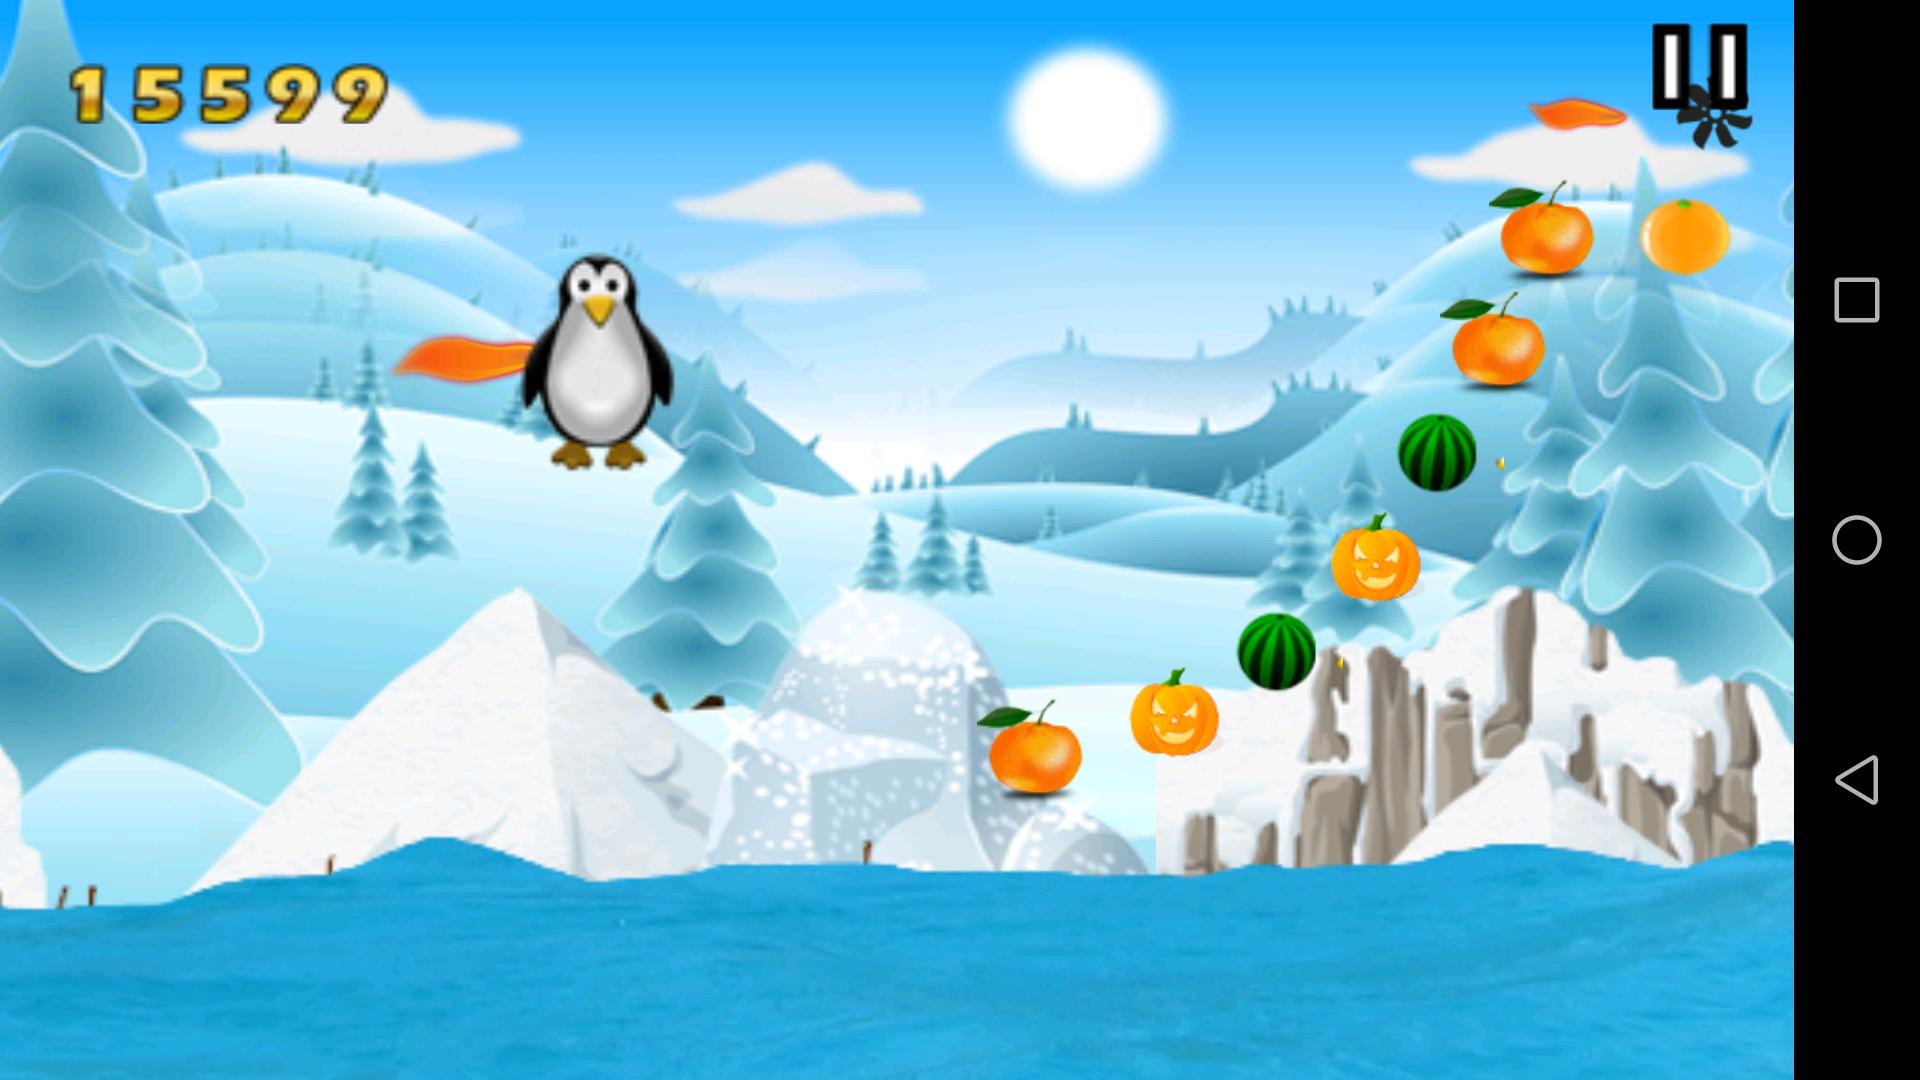 Пингвин игра виндовс 10. Зимний фон игры Пингвин. Программа для игры Пингвин. Игра Пингвин по льду прыгает и собирает монетки. Игра пингвина битой